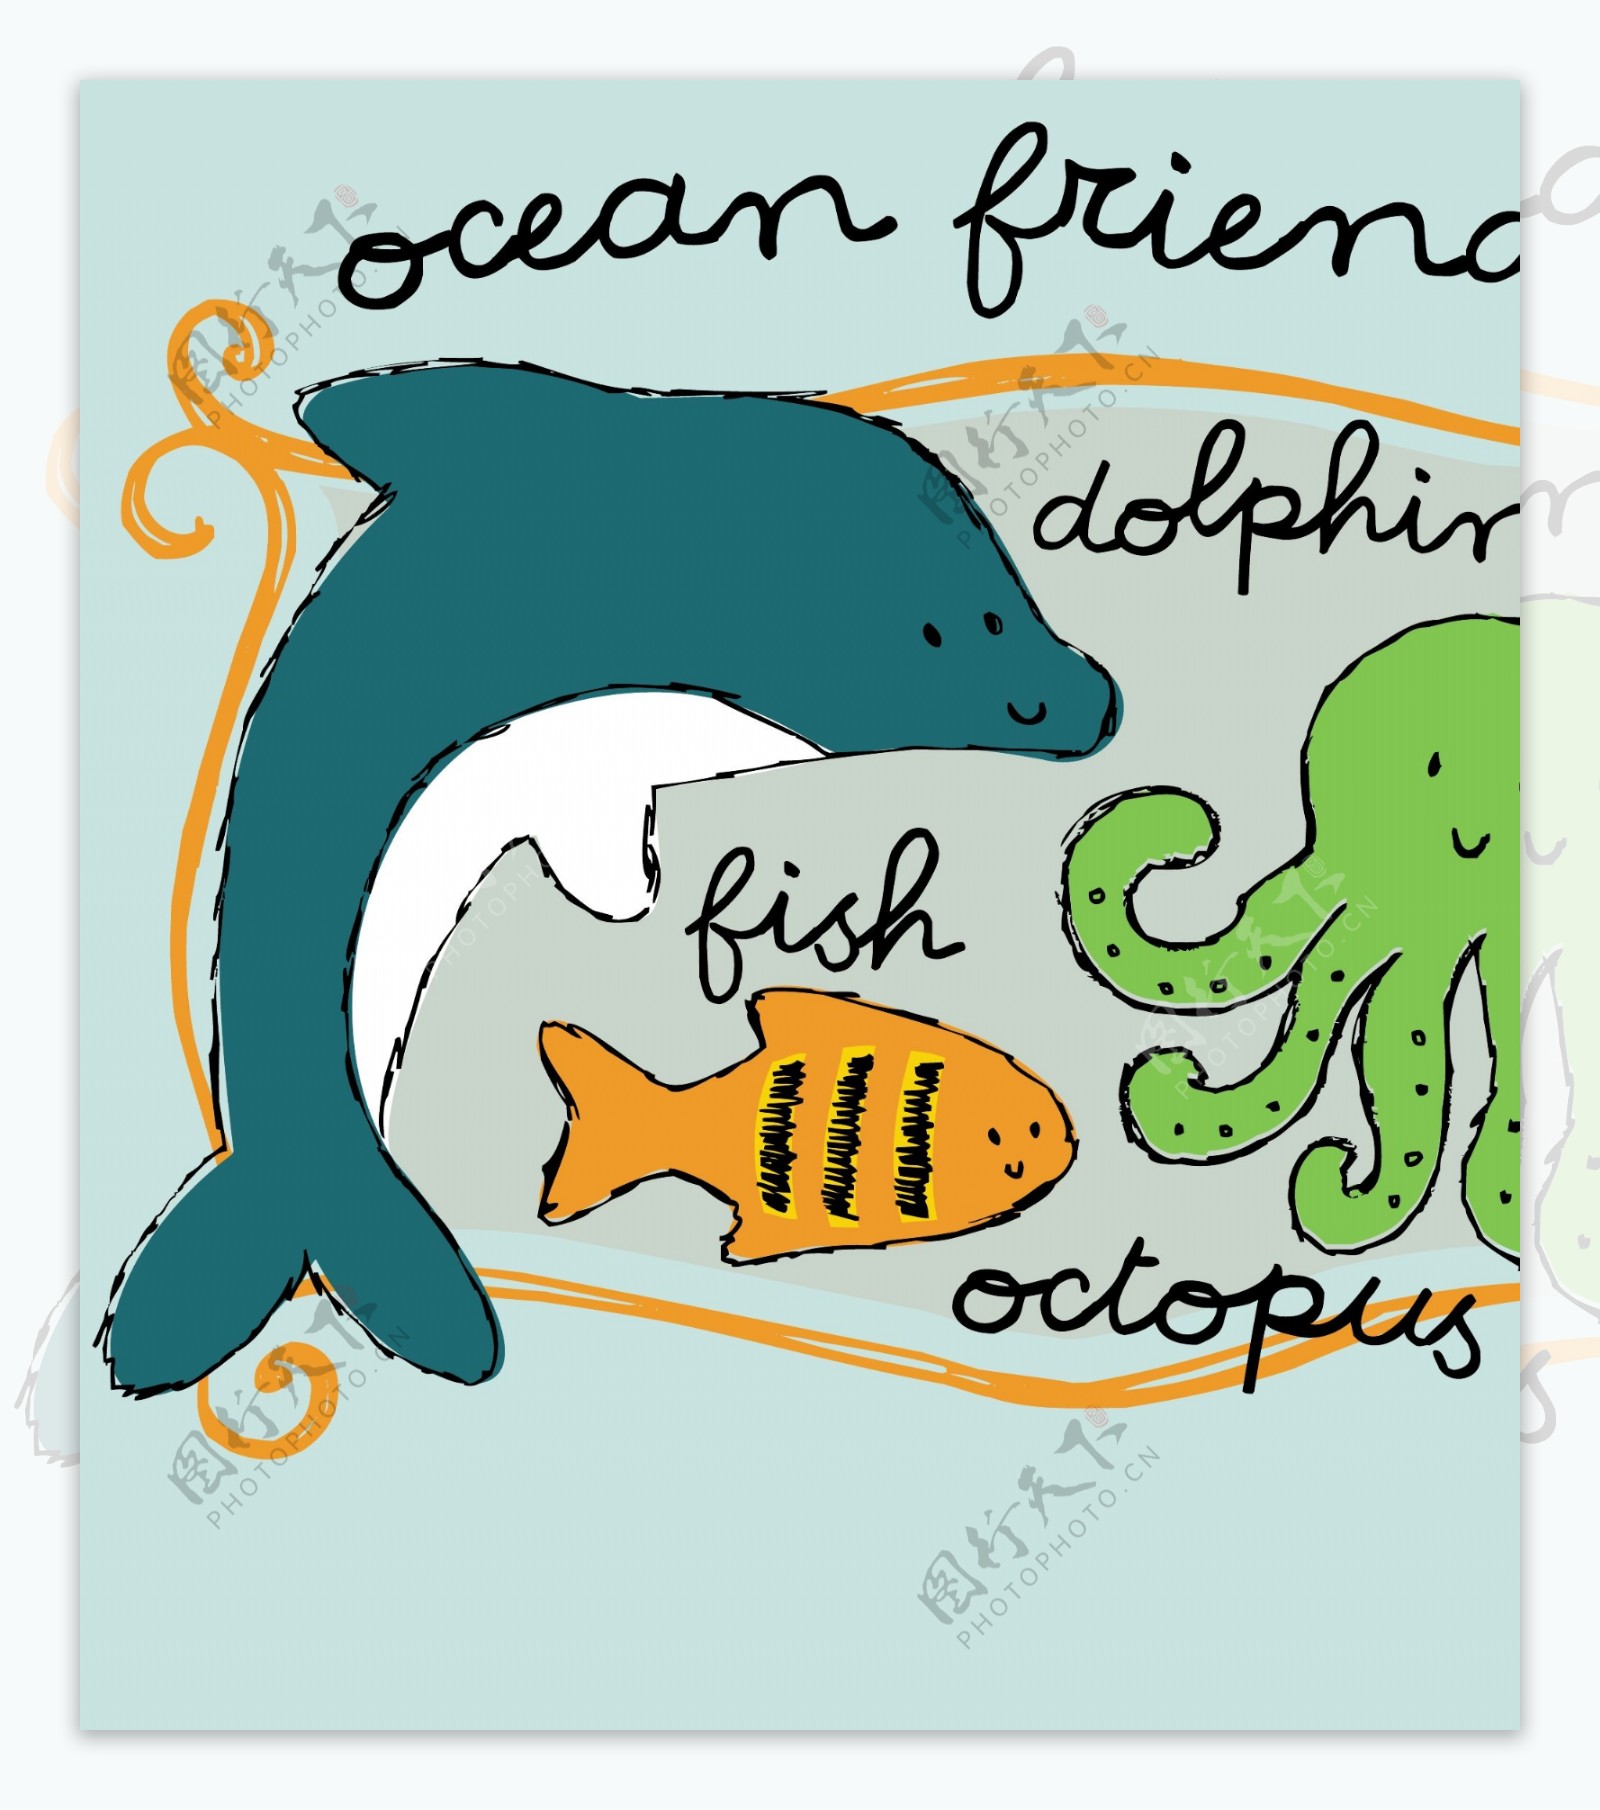 卡通海洋动物